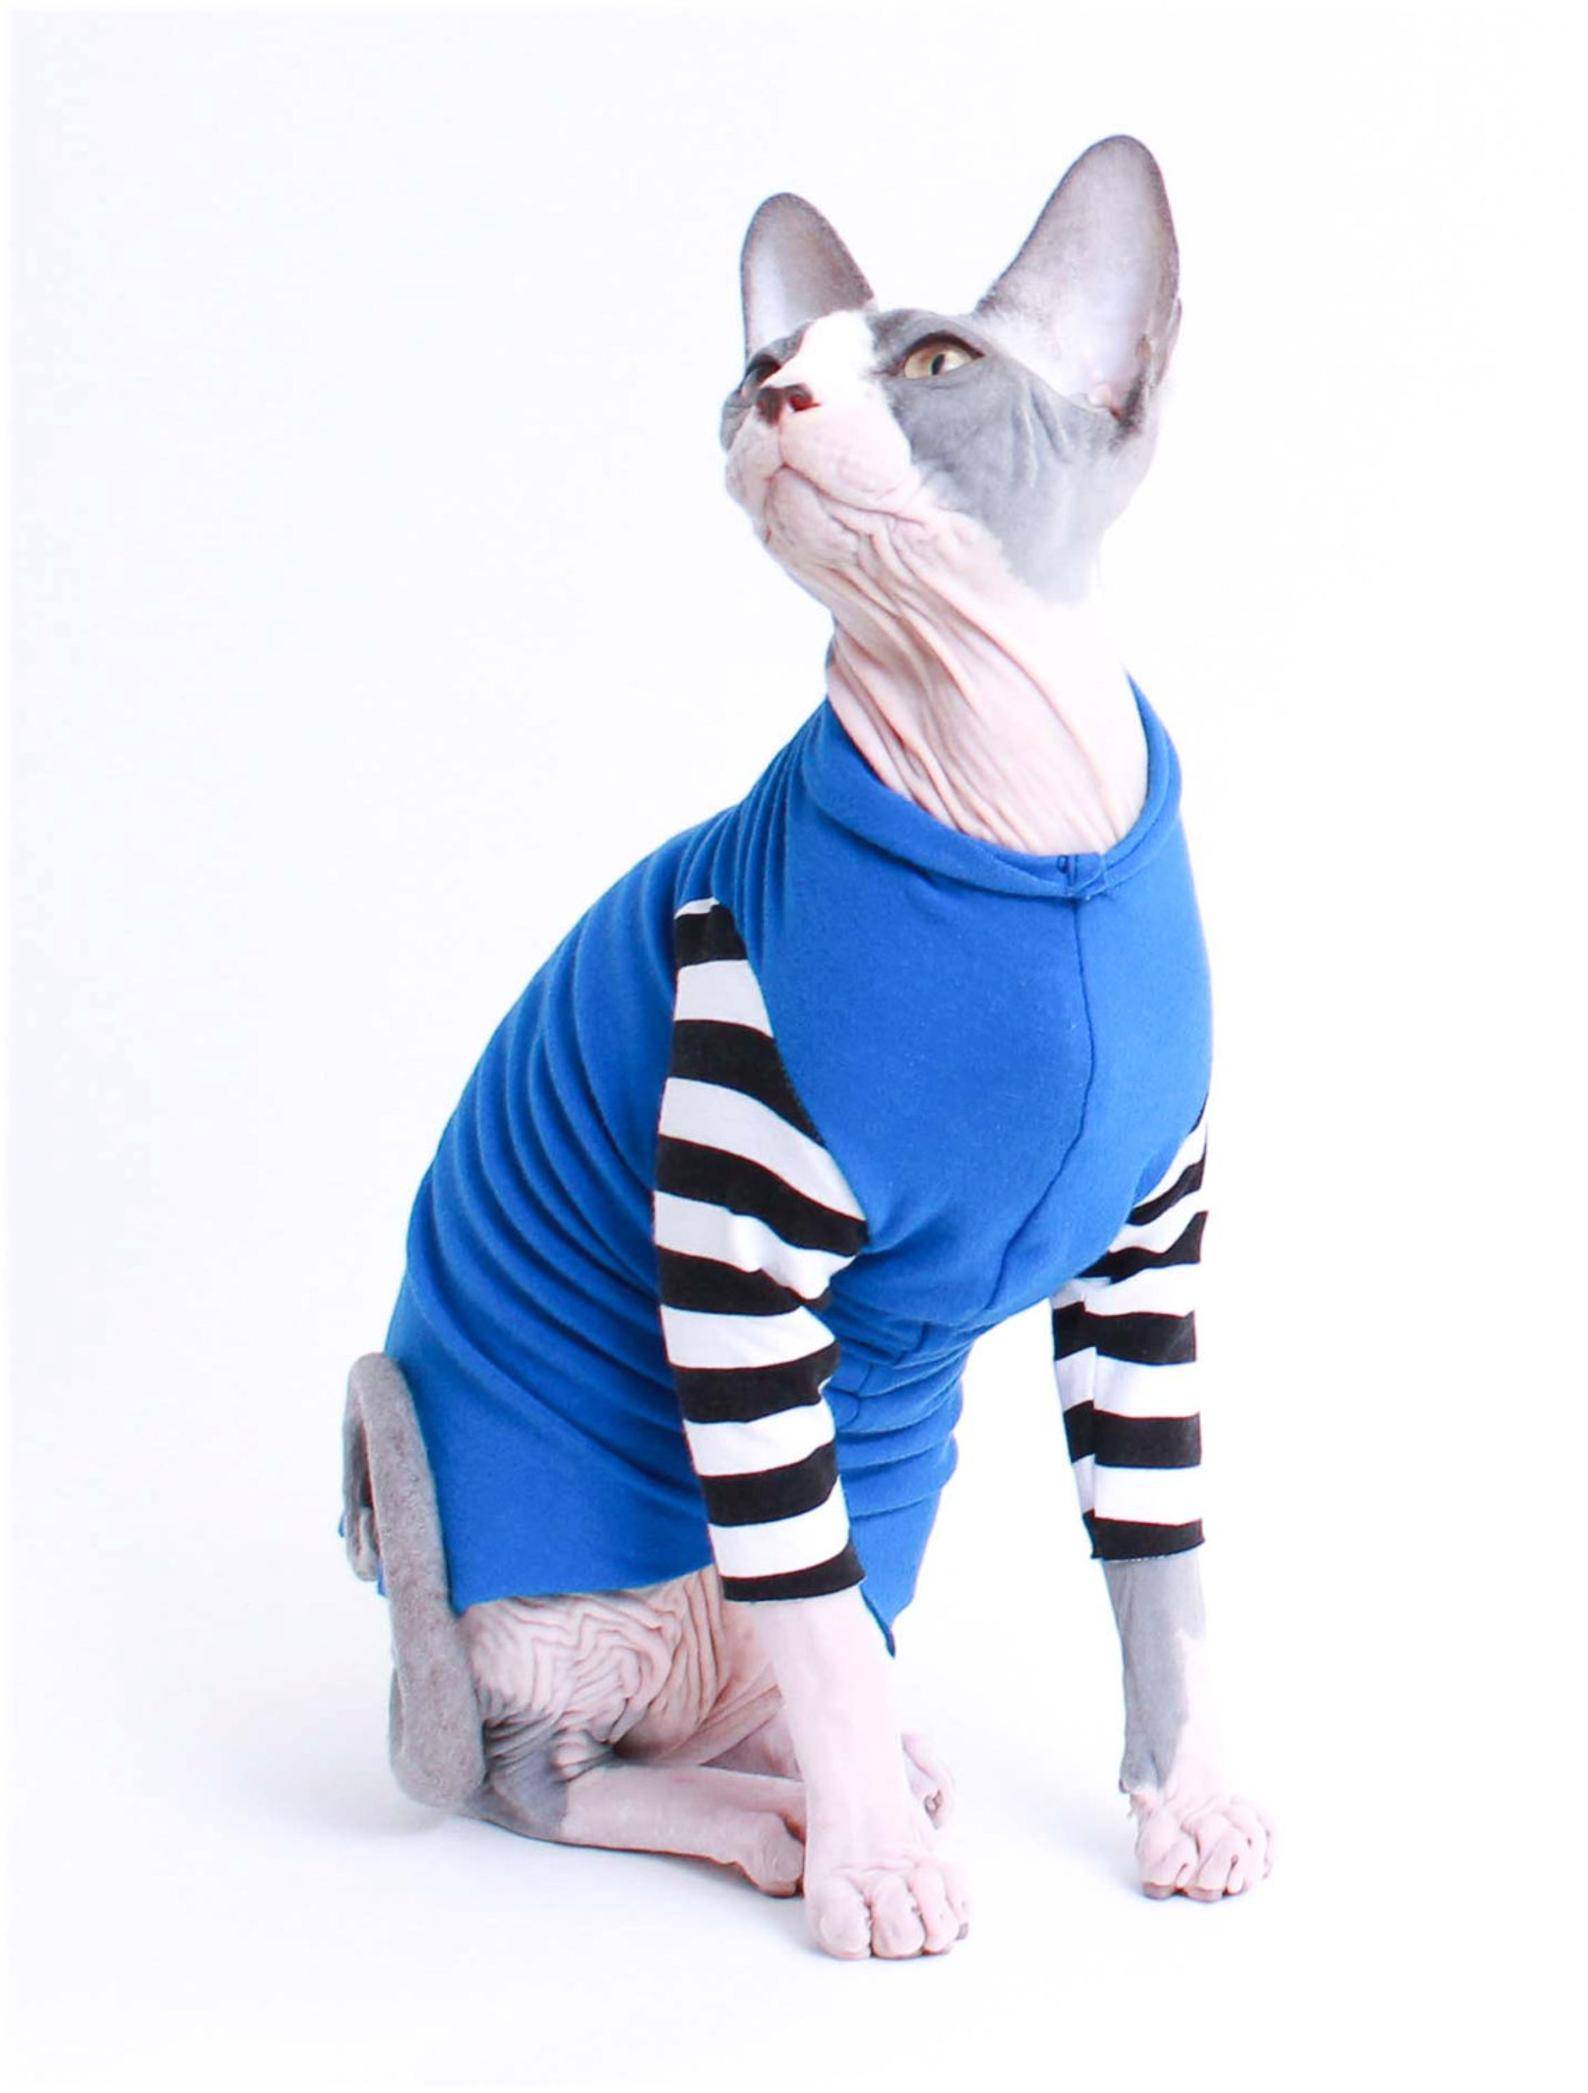 Одежда для кошки: сделать самому своими руками создаем наряды для питомцев